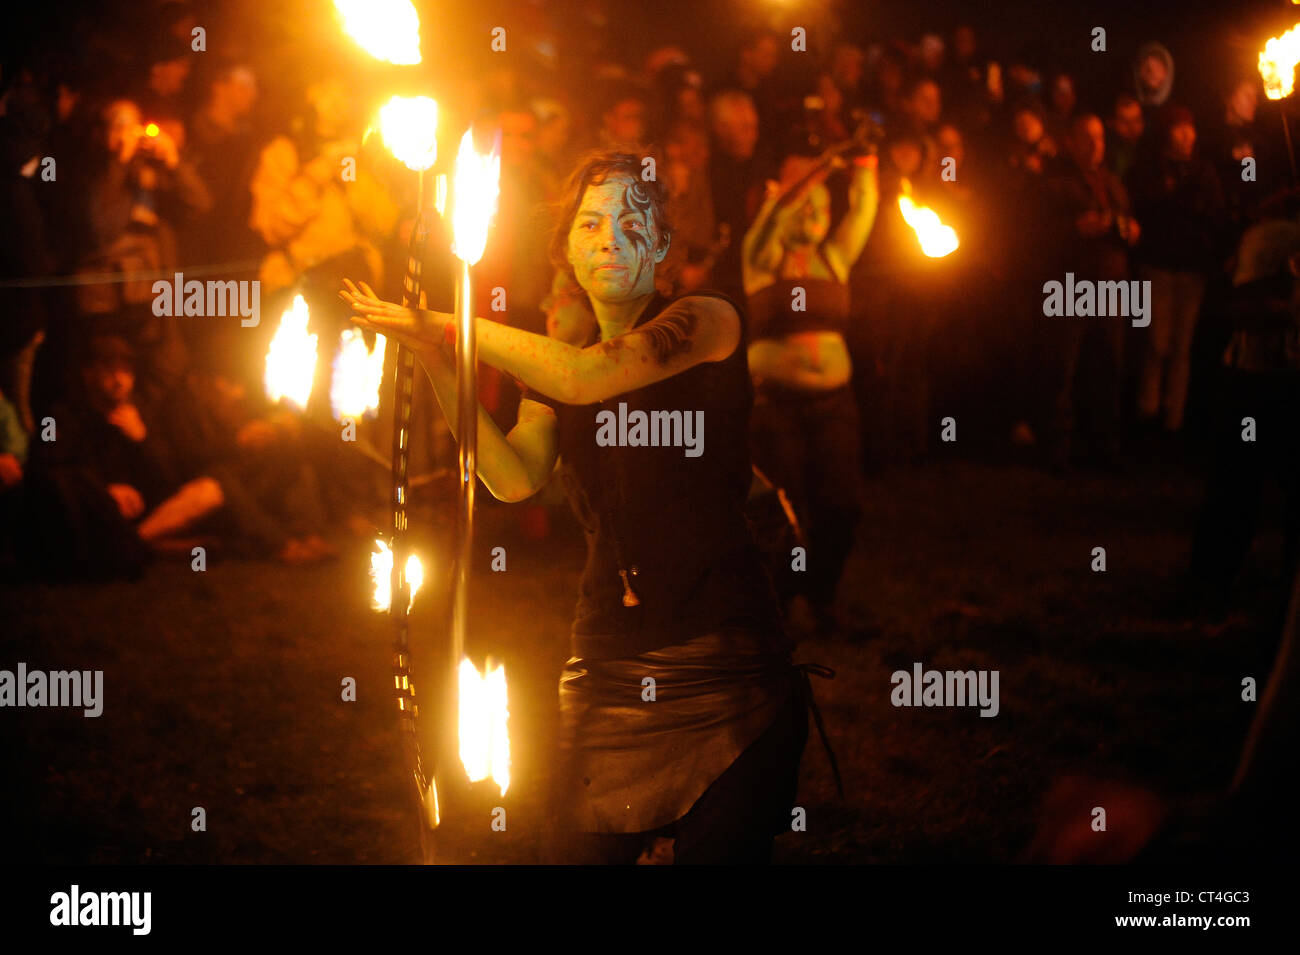 Gli artisti interpreti o esecutori prendere parte all'annuale Beltane Fire Festival su Calton Hill, Edimburgo, Scozia. Foto Stock